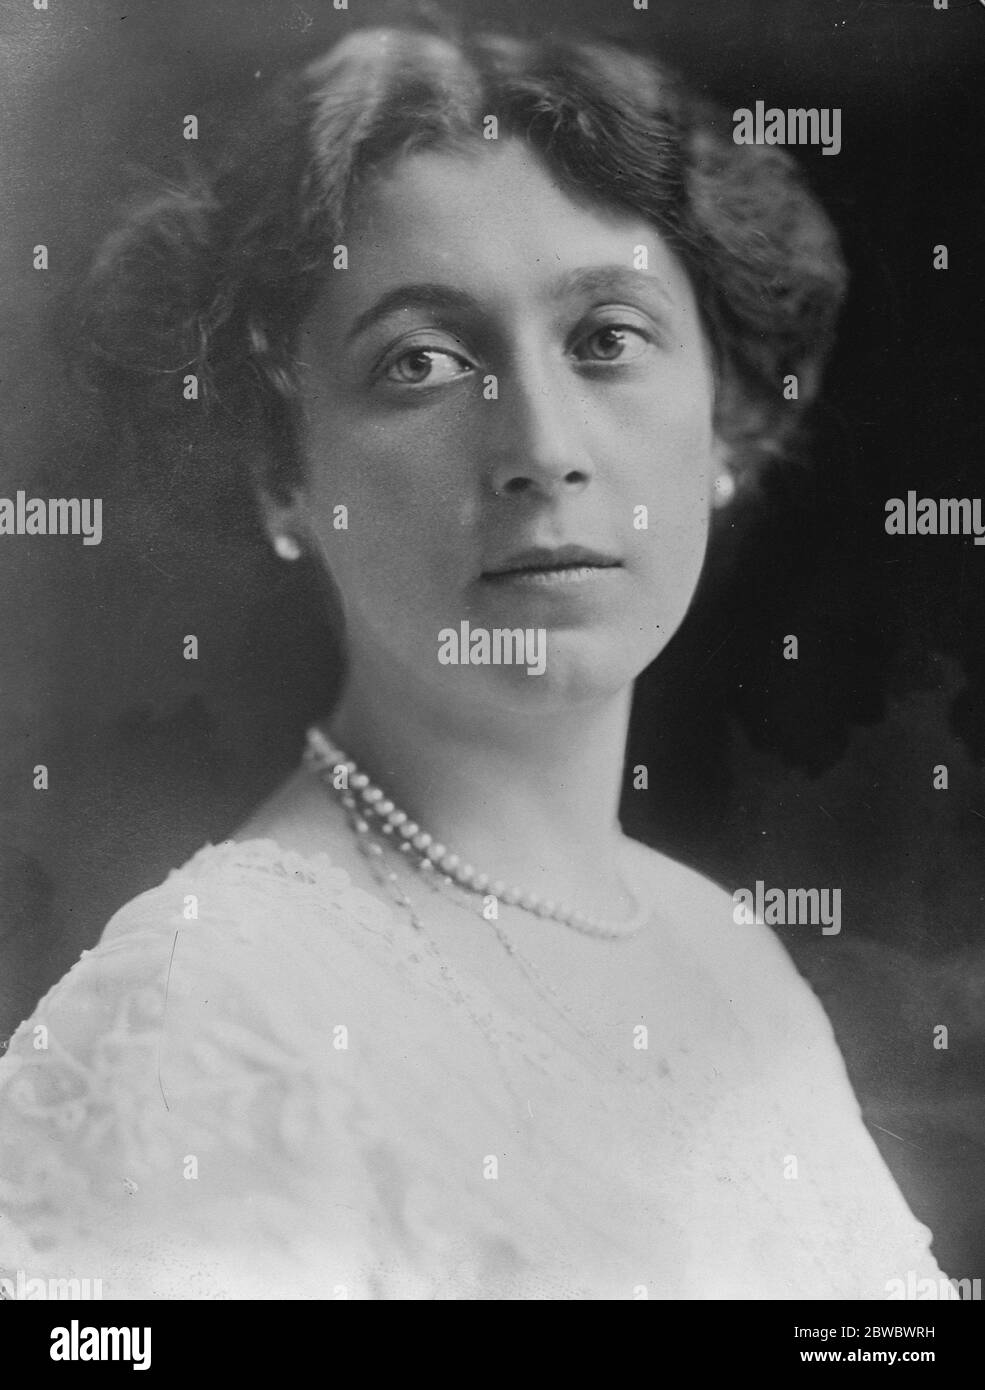 La contessa ha condannato a 12 mesi di reclusione . Un impressionante studio ritratto della contessa Elinor von Bothmer , condannata a 12 mesi di reclusione per furto . 21 novembre 1925 Foto Stock